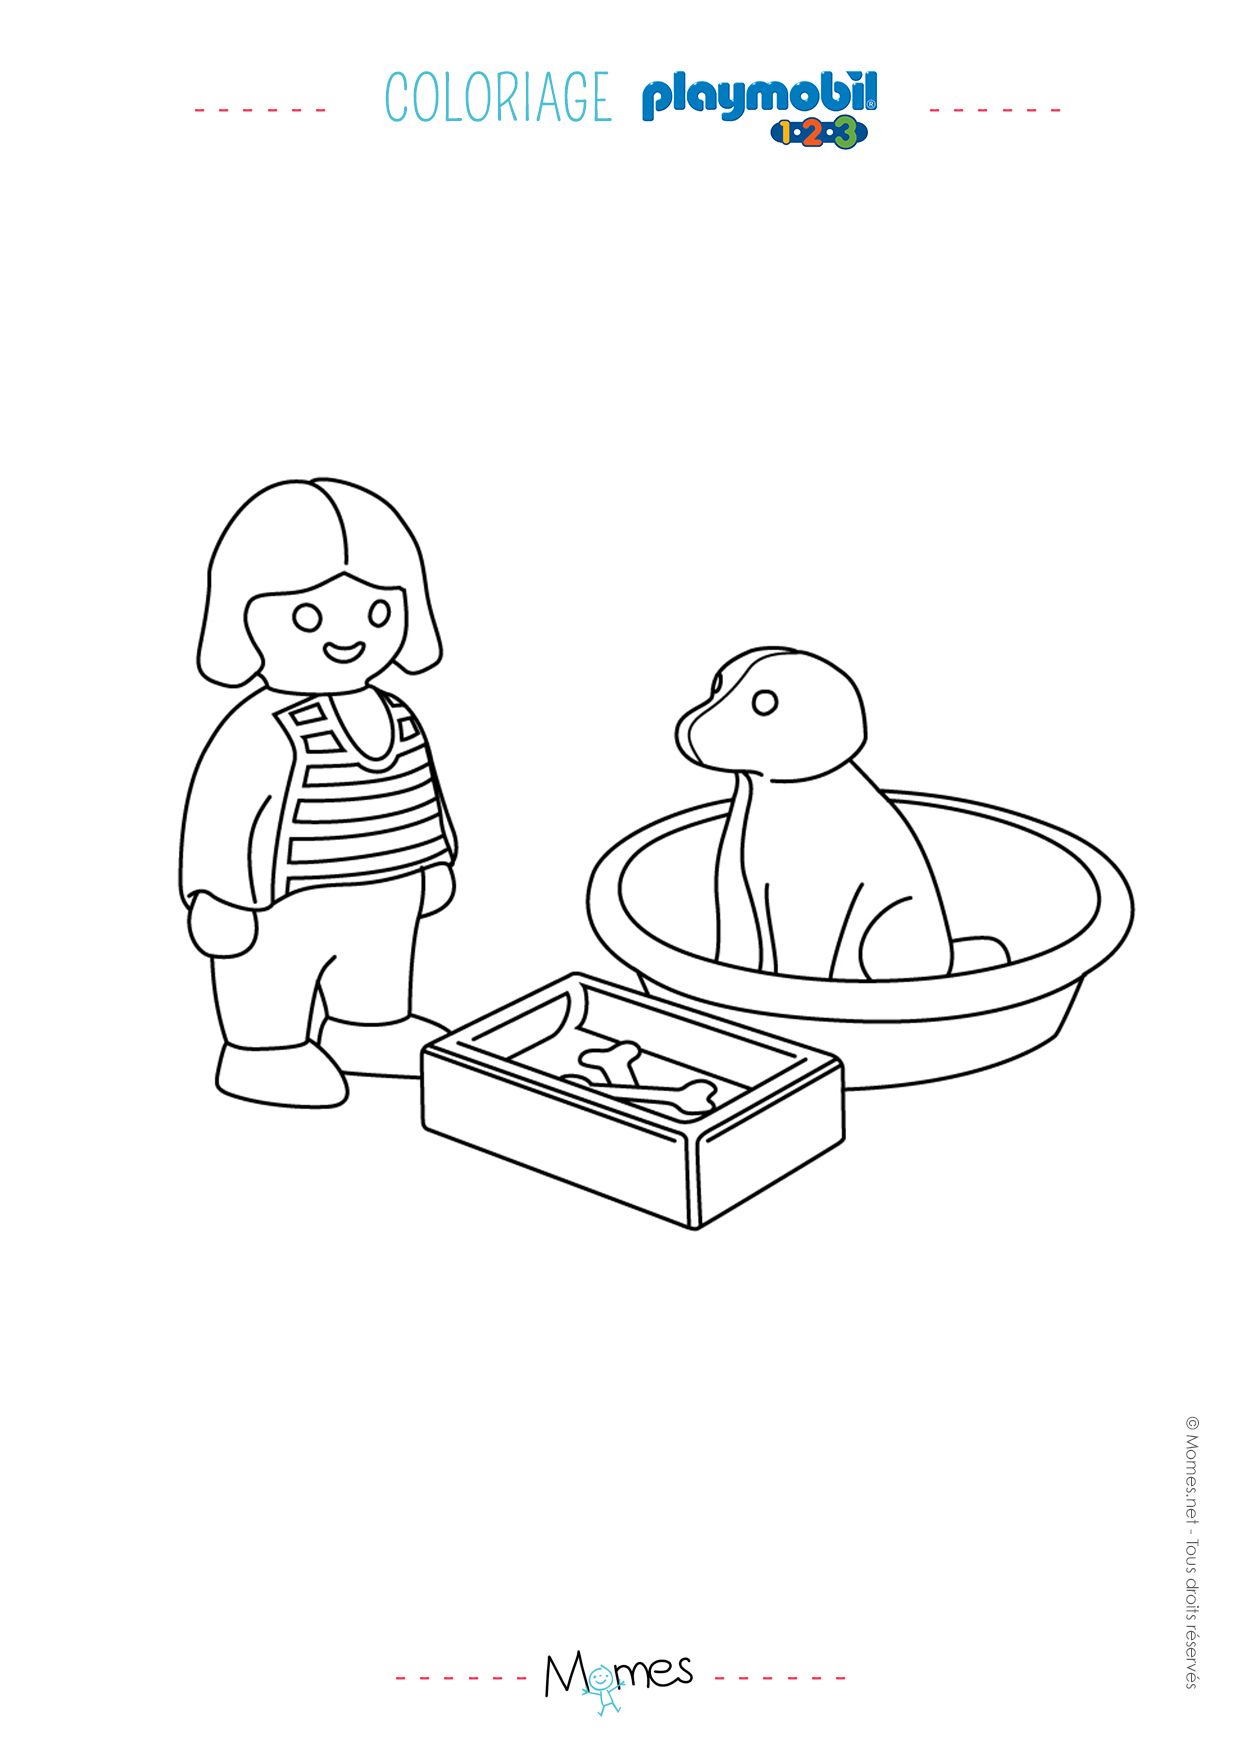 coloriage la petite fille et son chien playmobil imprimer with coloriage playmobil